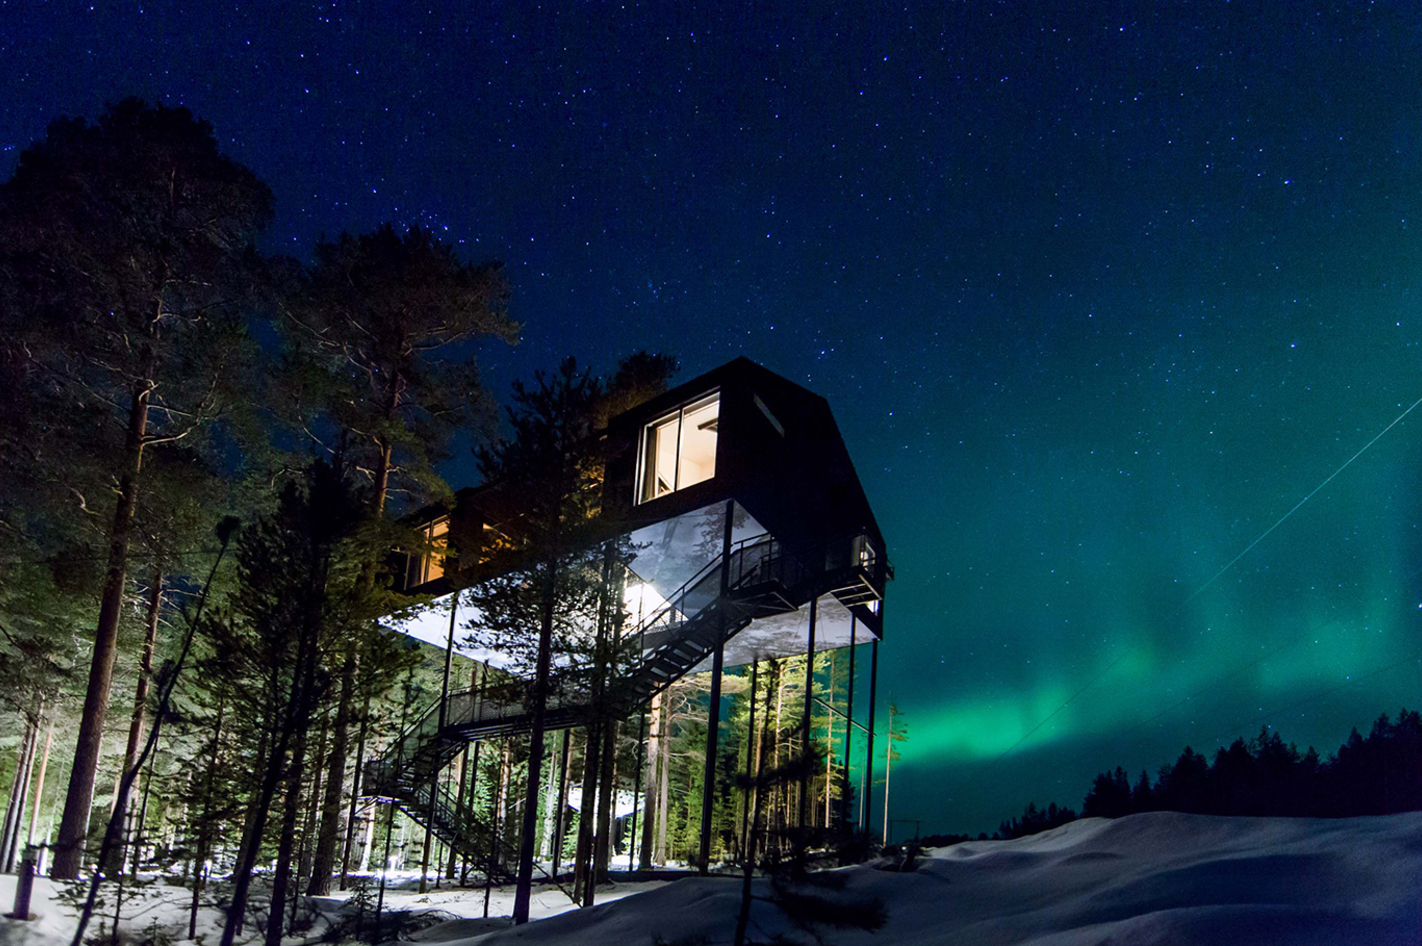 Erlebnisreise Lappland für 2 (5 Tage) – Entdeckt Lapplands Schönheit auf einer Reise